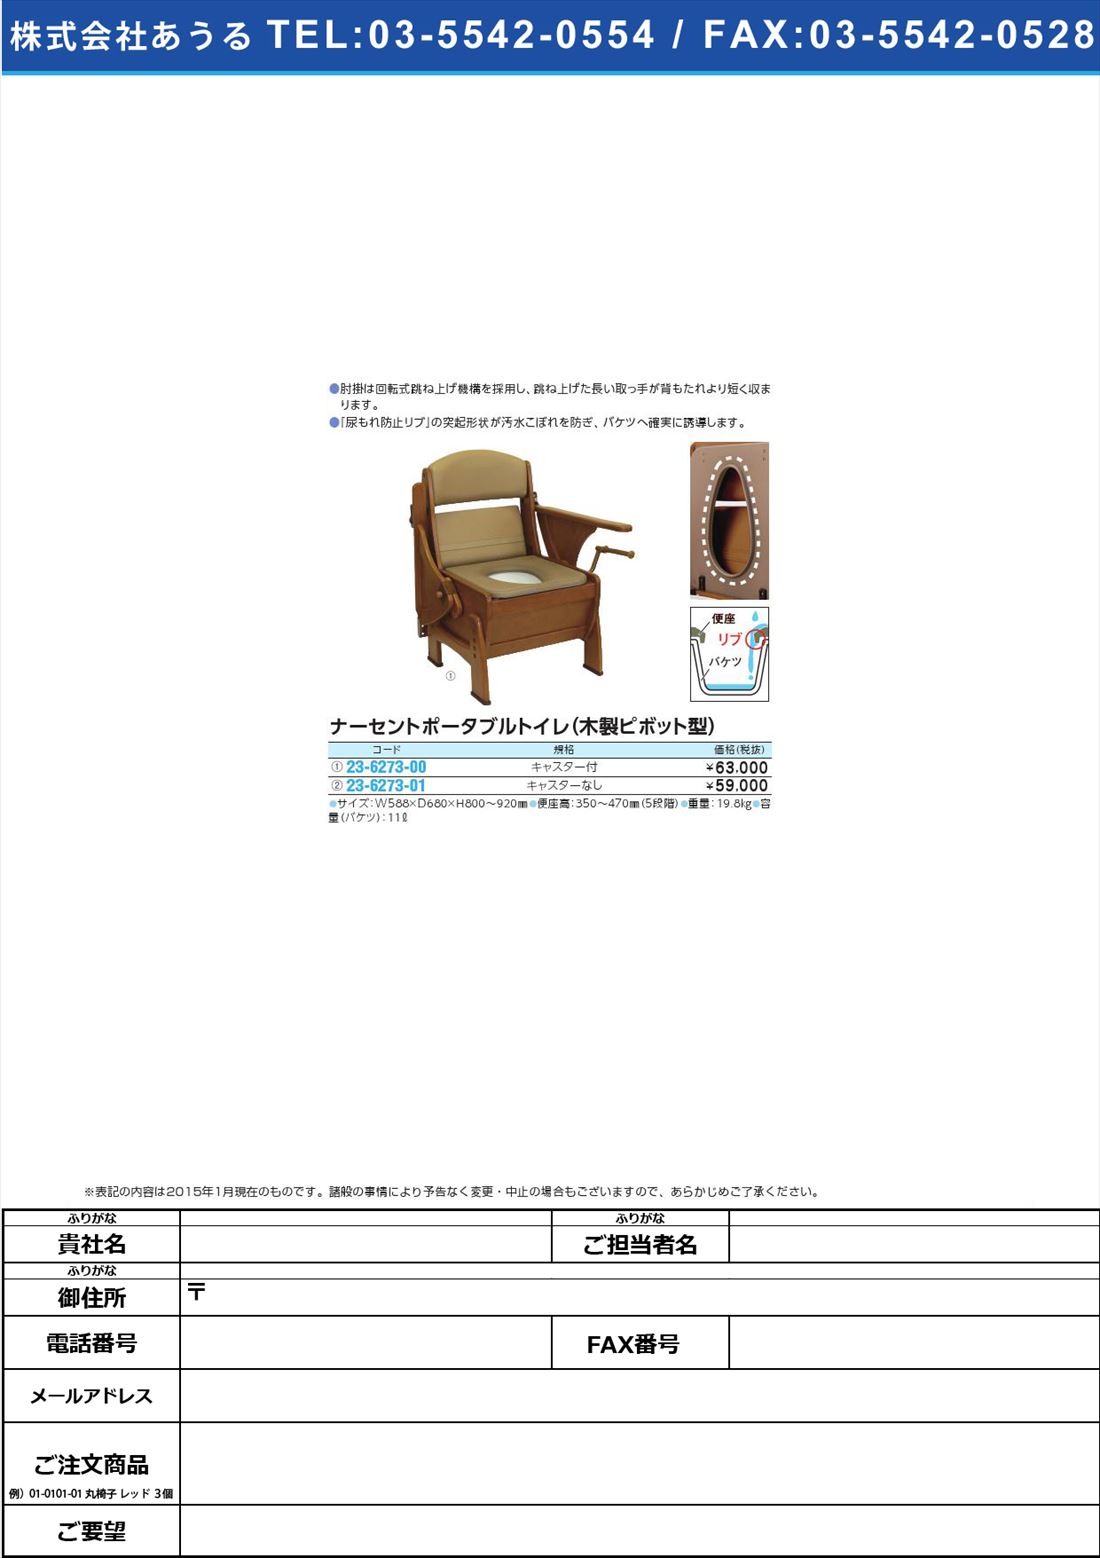 ナーセントトイレ・木製ピボット型 ﾅｰｾﾝﾄﾄｲﾚﾓｸｾｲﾋﾟﾎﾞｯﾄ(23-6273-00)ｷｬｽﾀｰﾂｷ